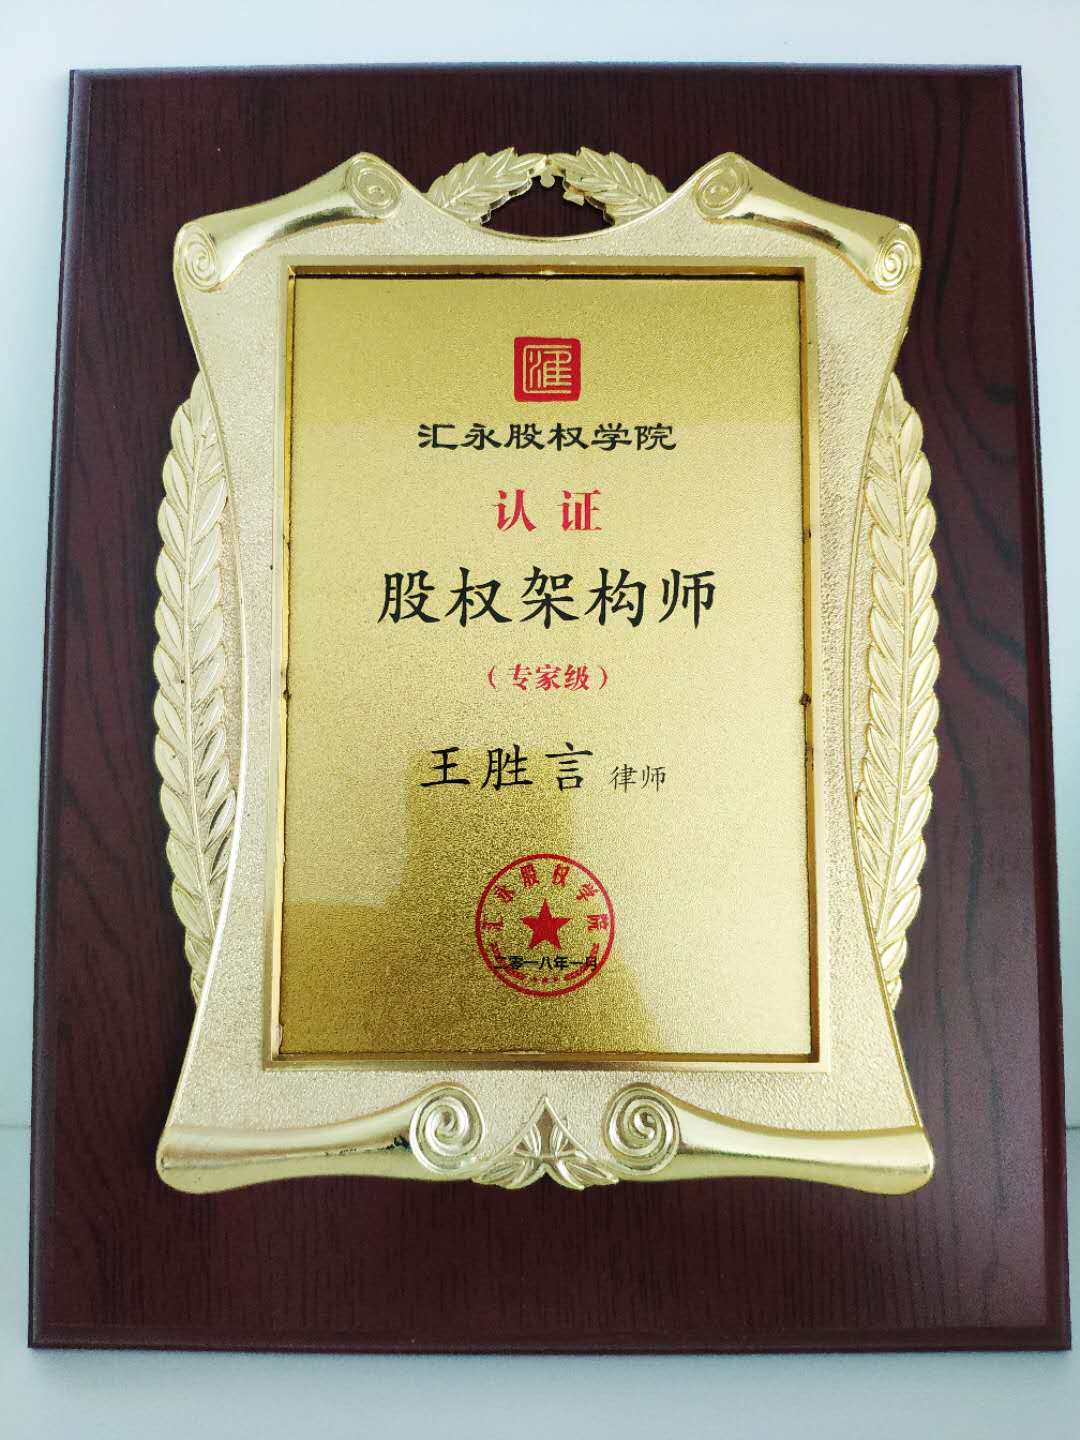 王胜言律获汇永股权学院股权架构师认证。